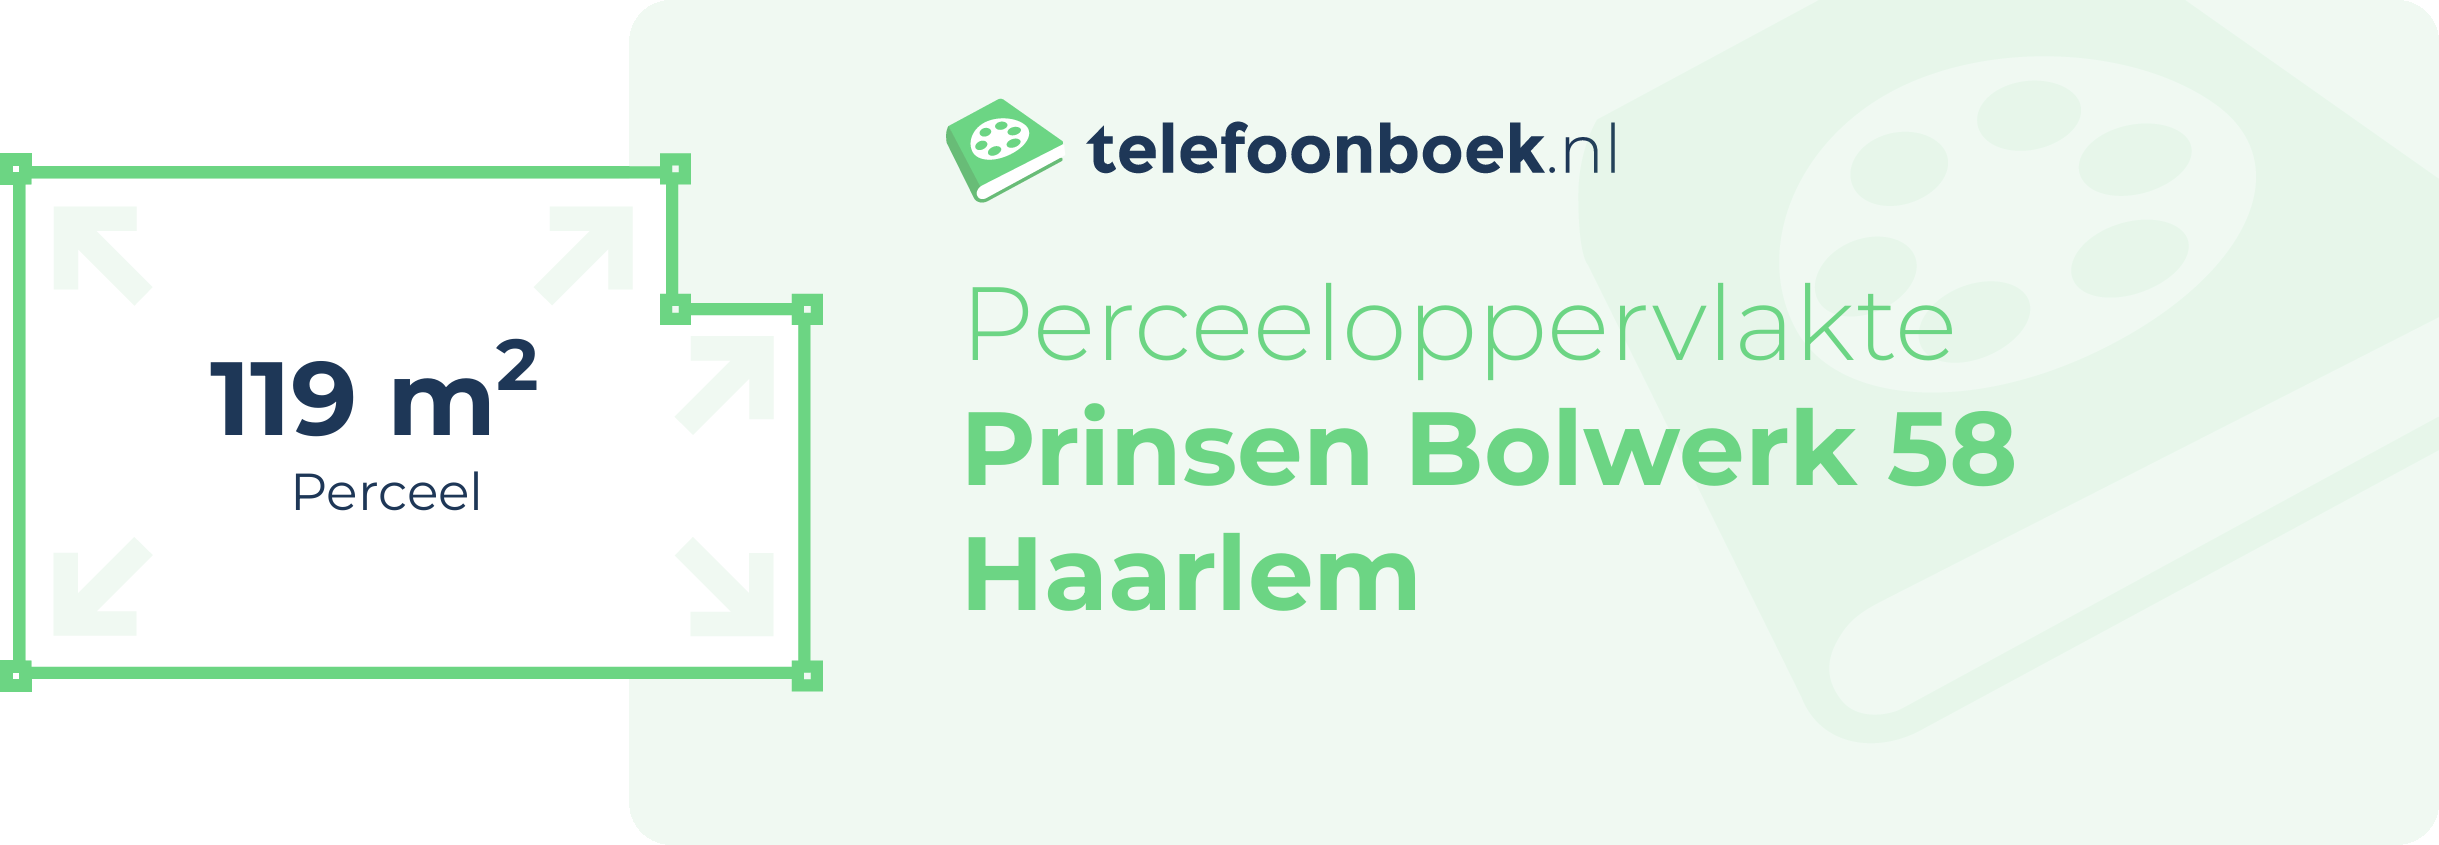 Perceeloppervlakte Prinsen Bolwerk 58 Haarlem